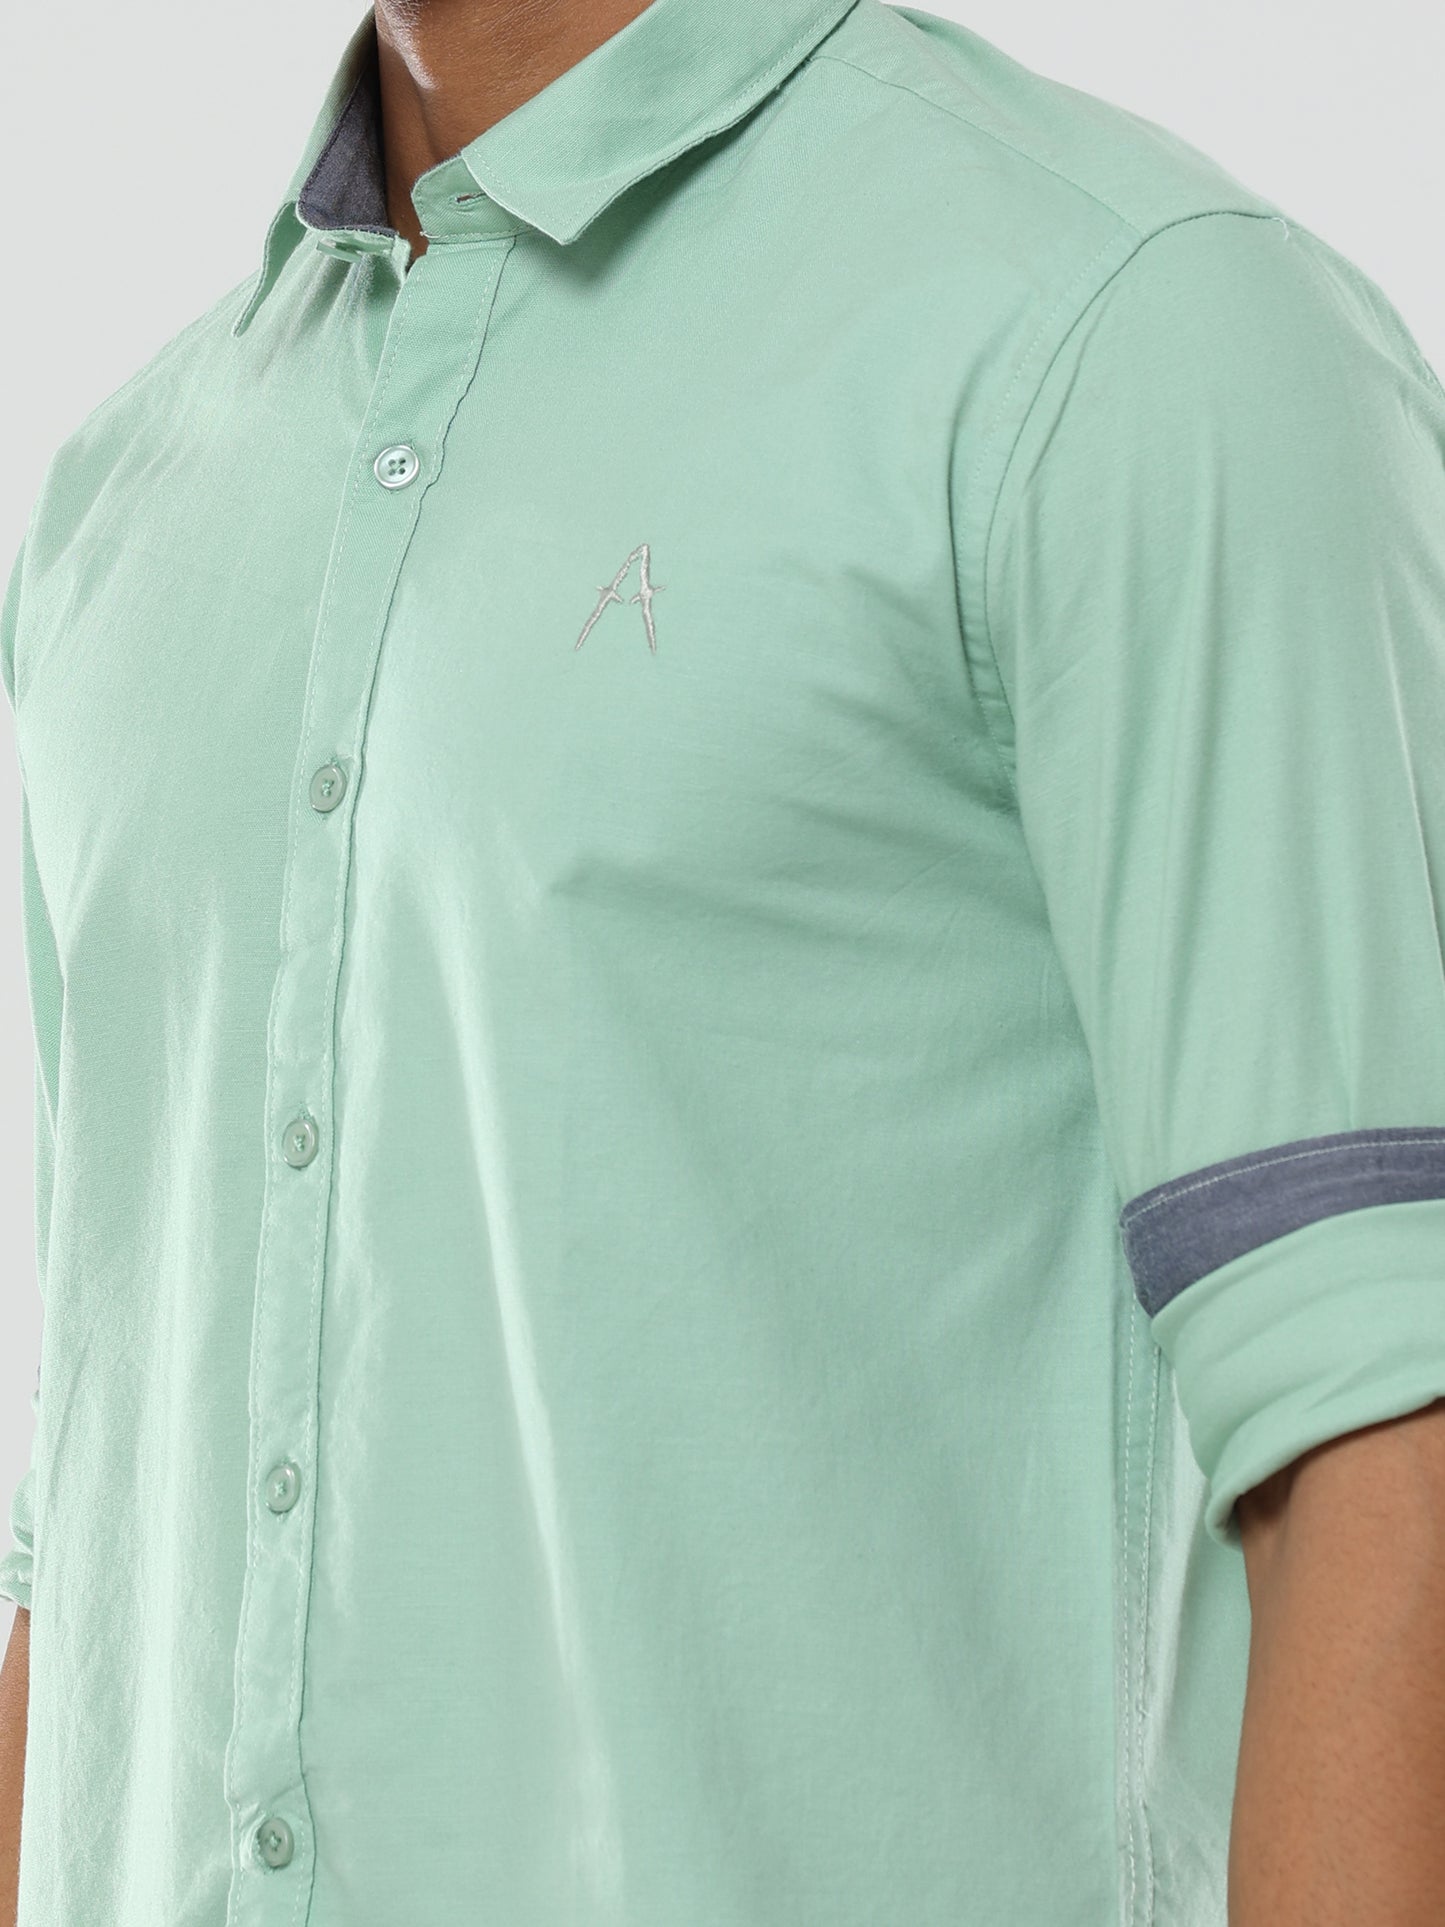 Pista Plain premium Cotton Oxford Shirt For Men